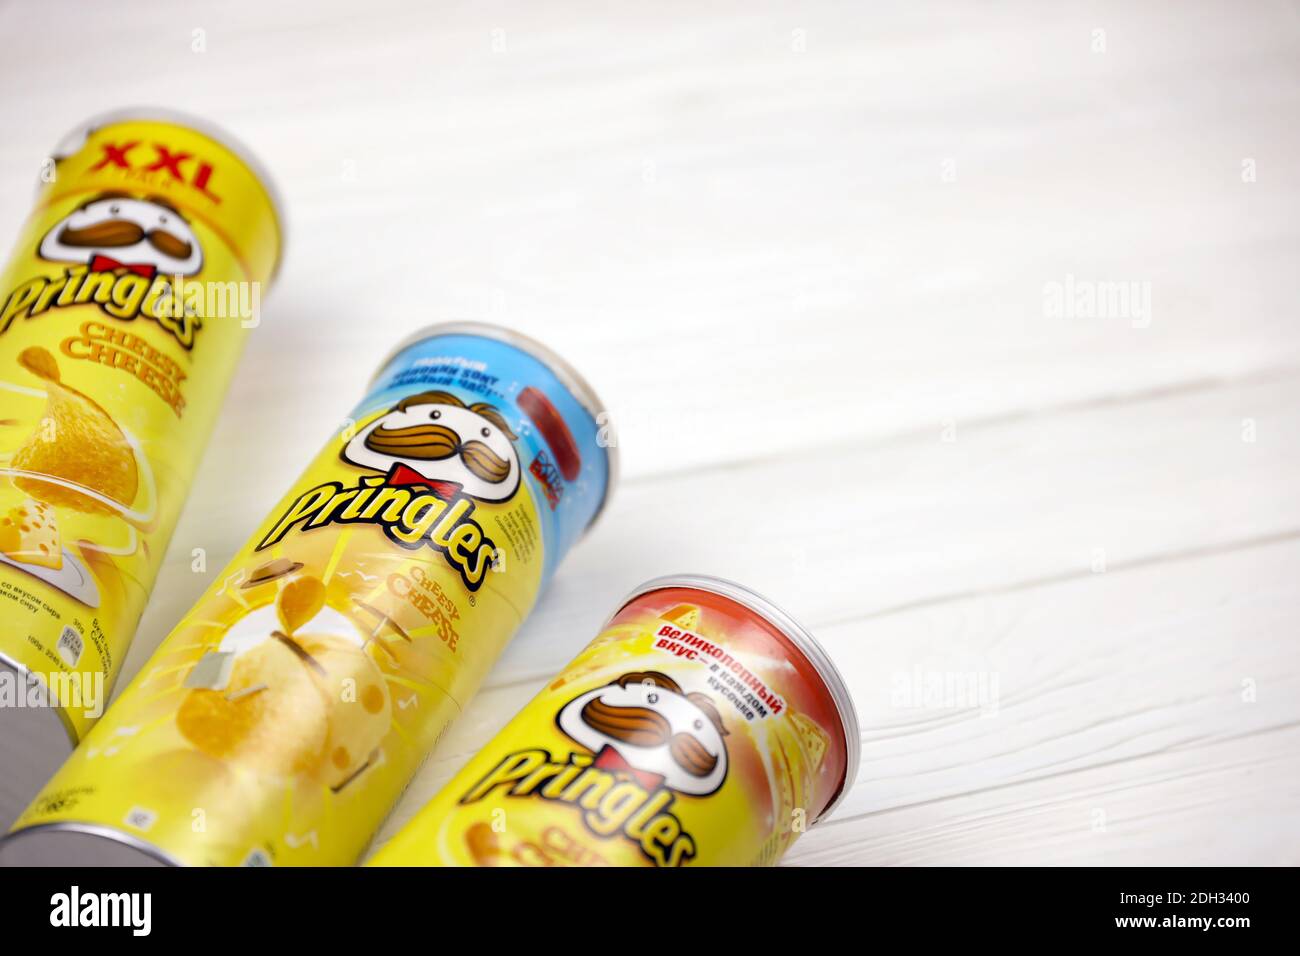 KHARKOV, UKRAINE - 23 NOVEMBRE 2020 : saveur de fromage Pringles. Boîtes en tube de carton avec chips de pommes de terre Pringles sur table blanche. Pringles est un soutien-gorge Banque D'Images